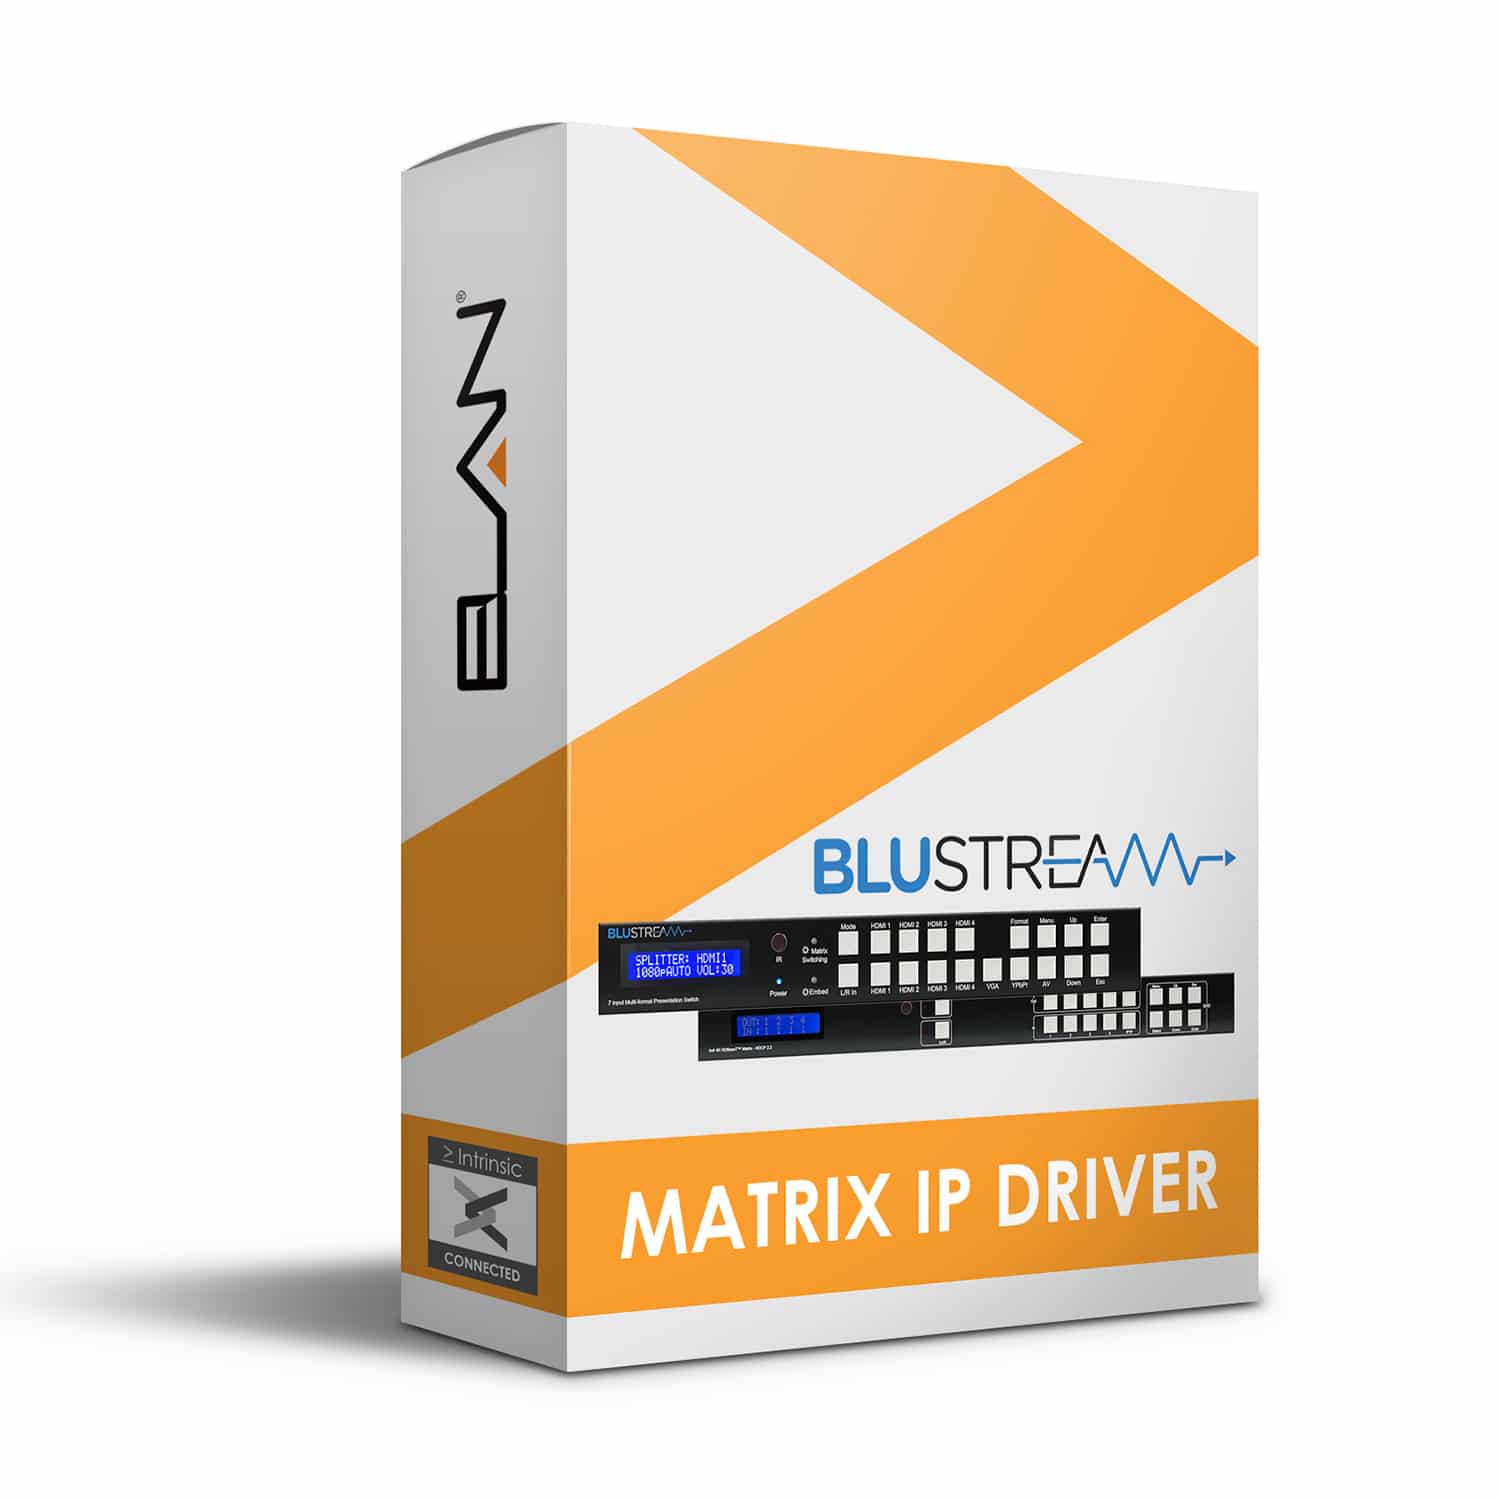 Blustream IP Matrix driver for Elan